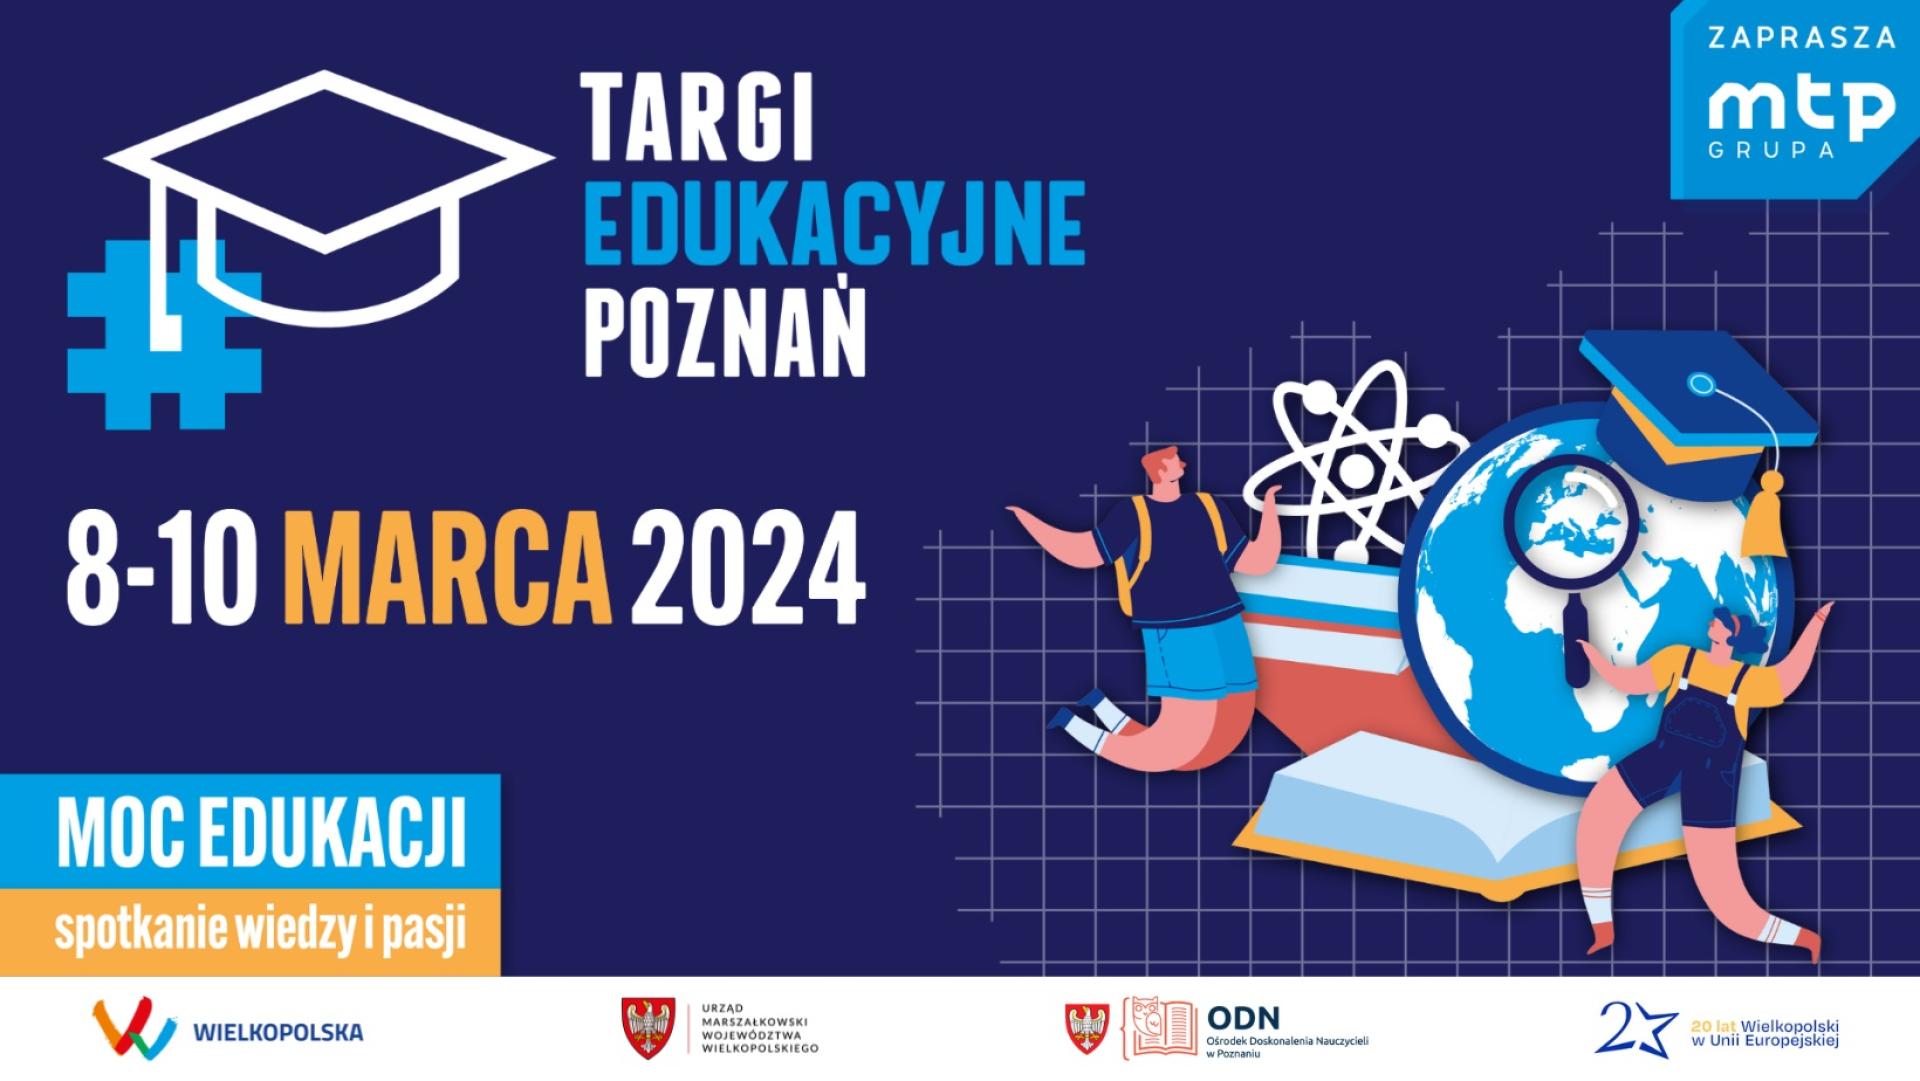 Targi Edukacyjne 2024 - zobacz więcej